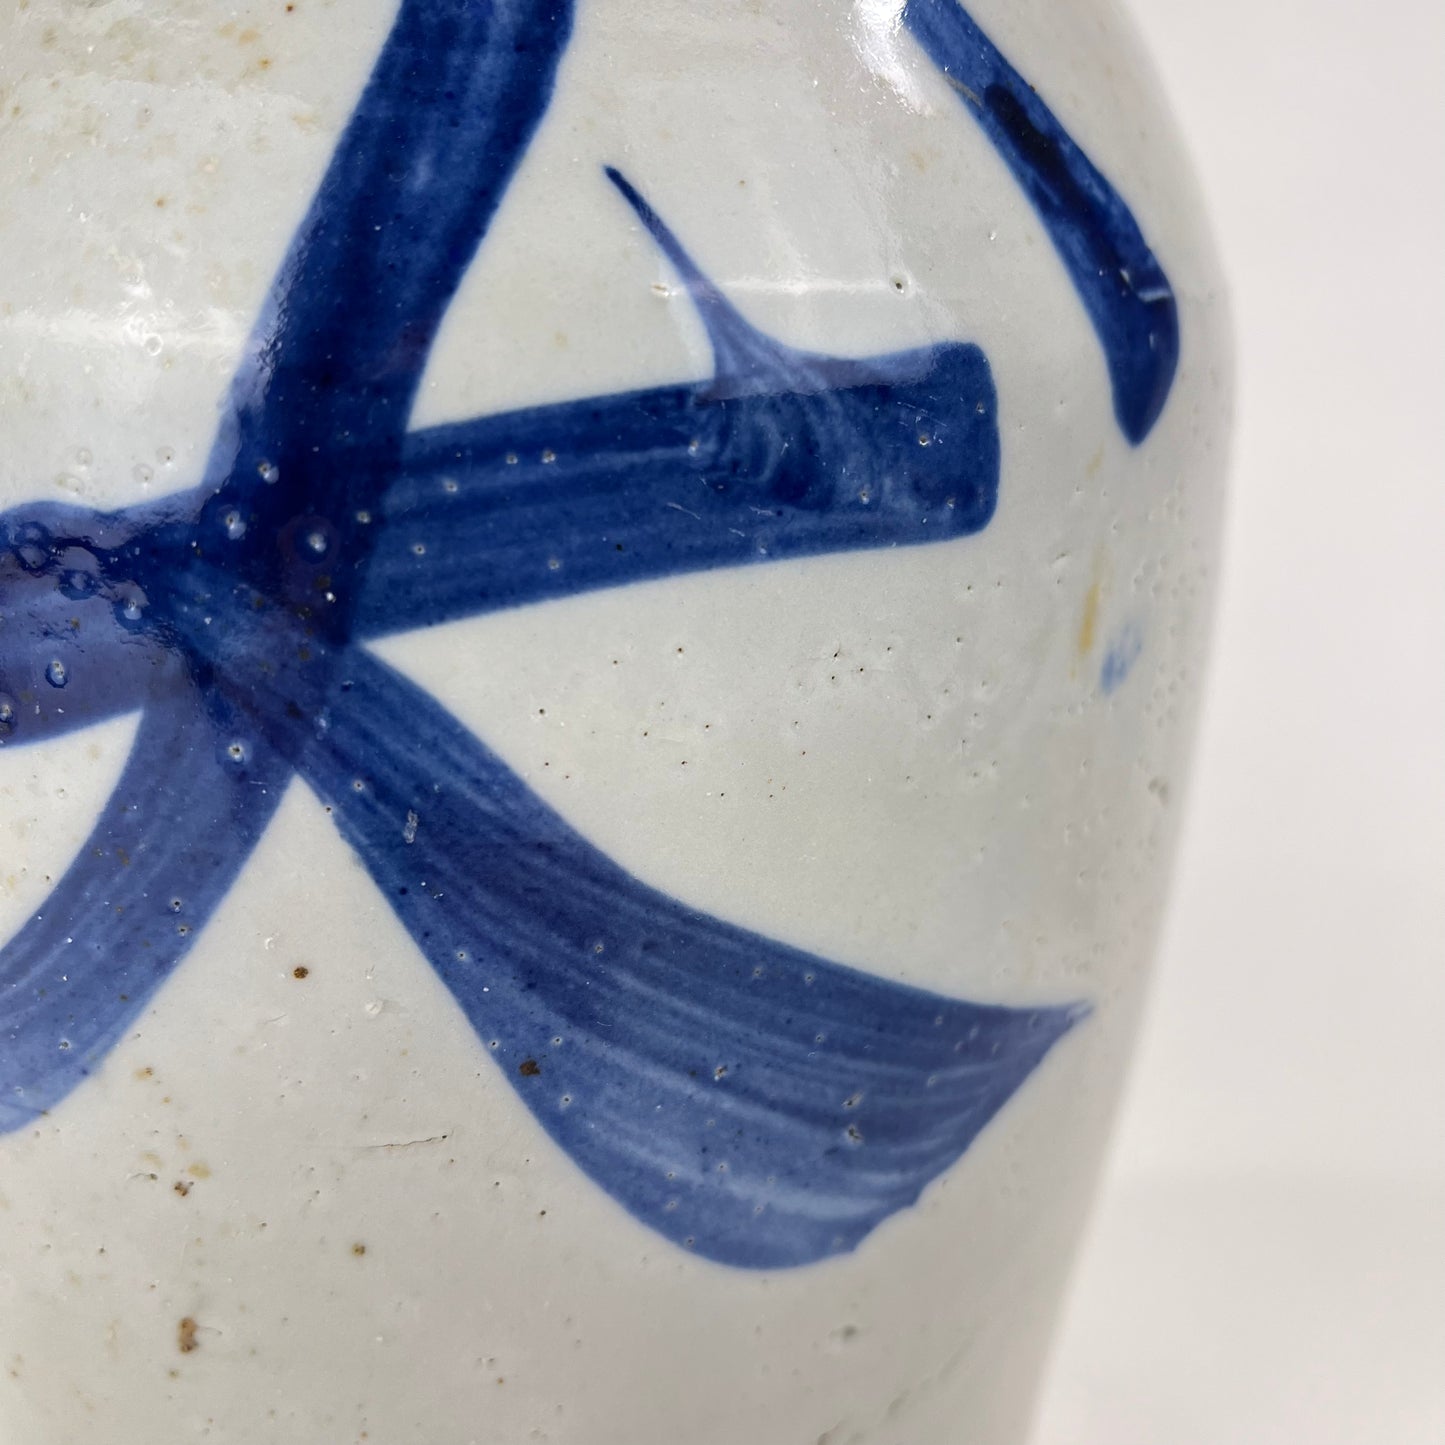 Antique Japanese Meiji Era (c1890's) Signed Tokkuri Sake Jug Sake Blue (Vase) 10.5”H